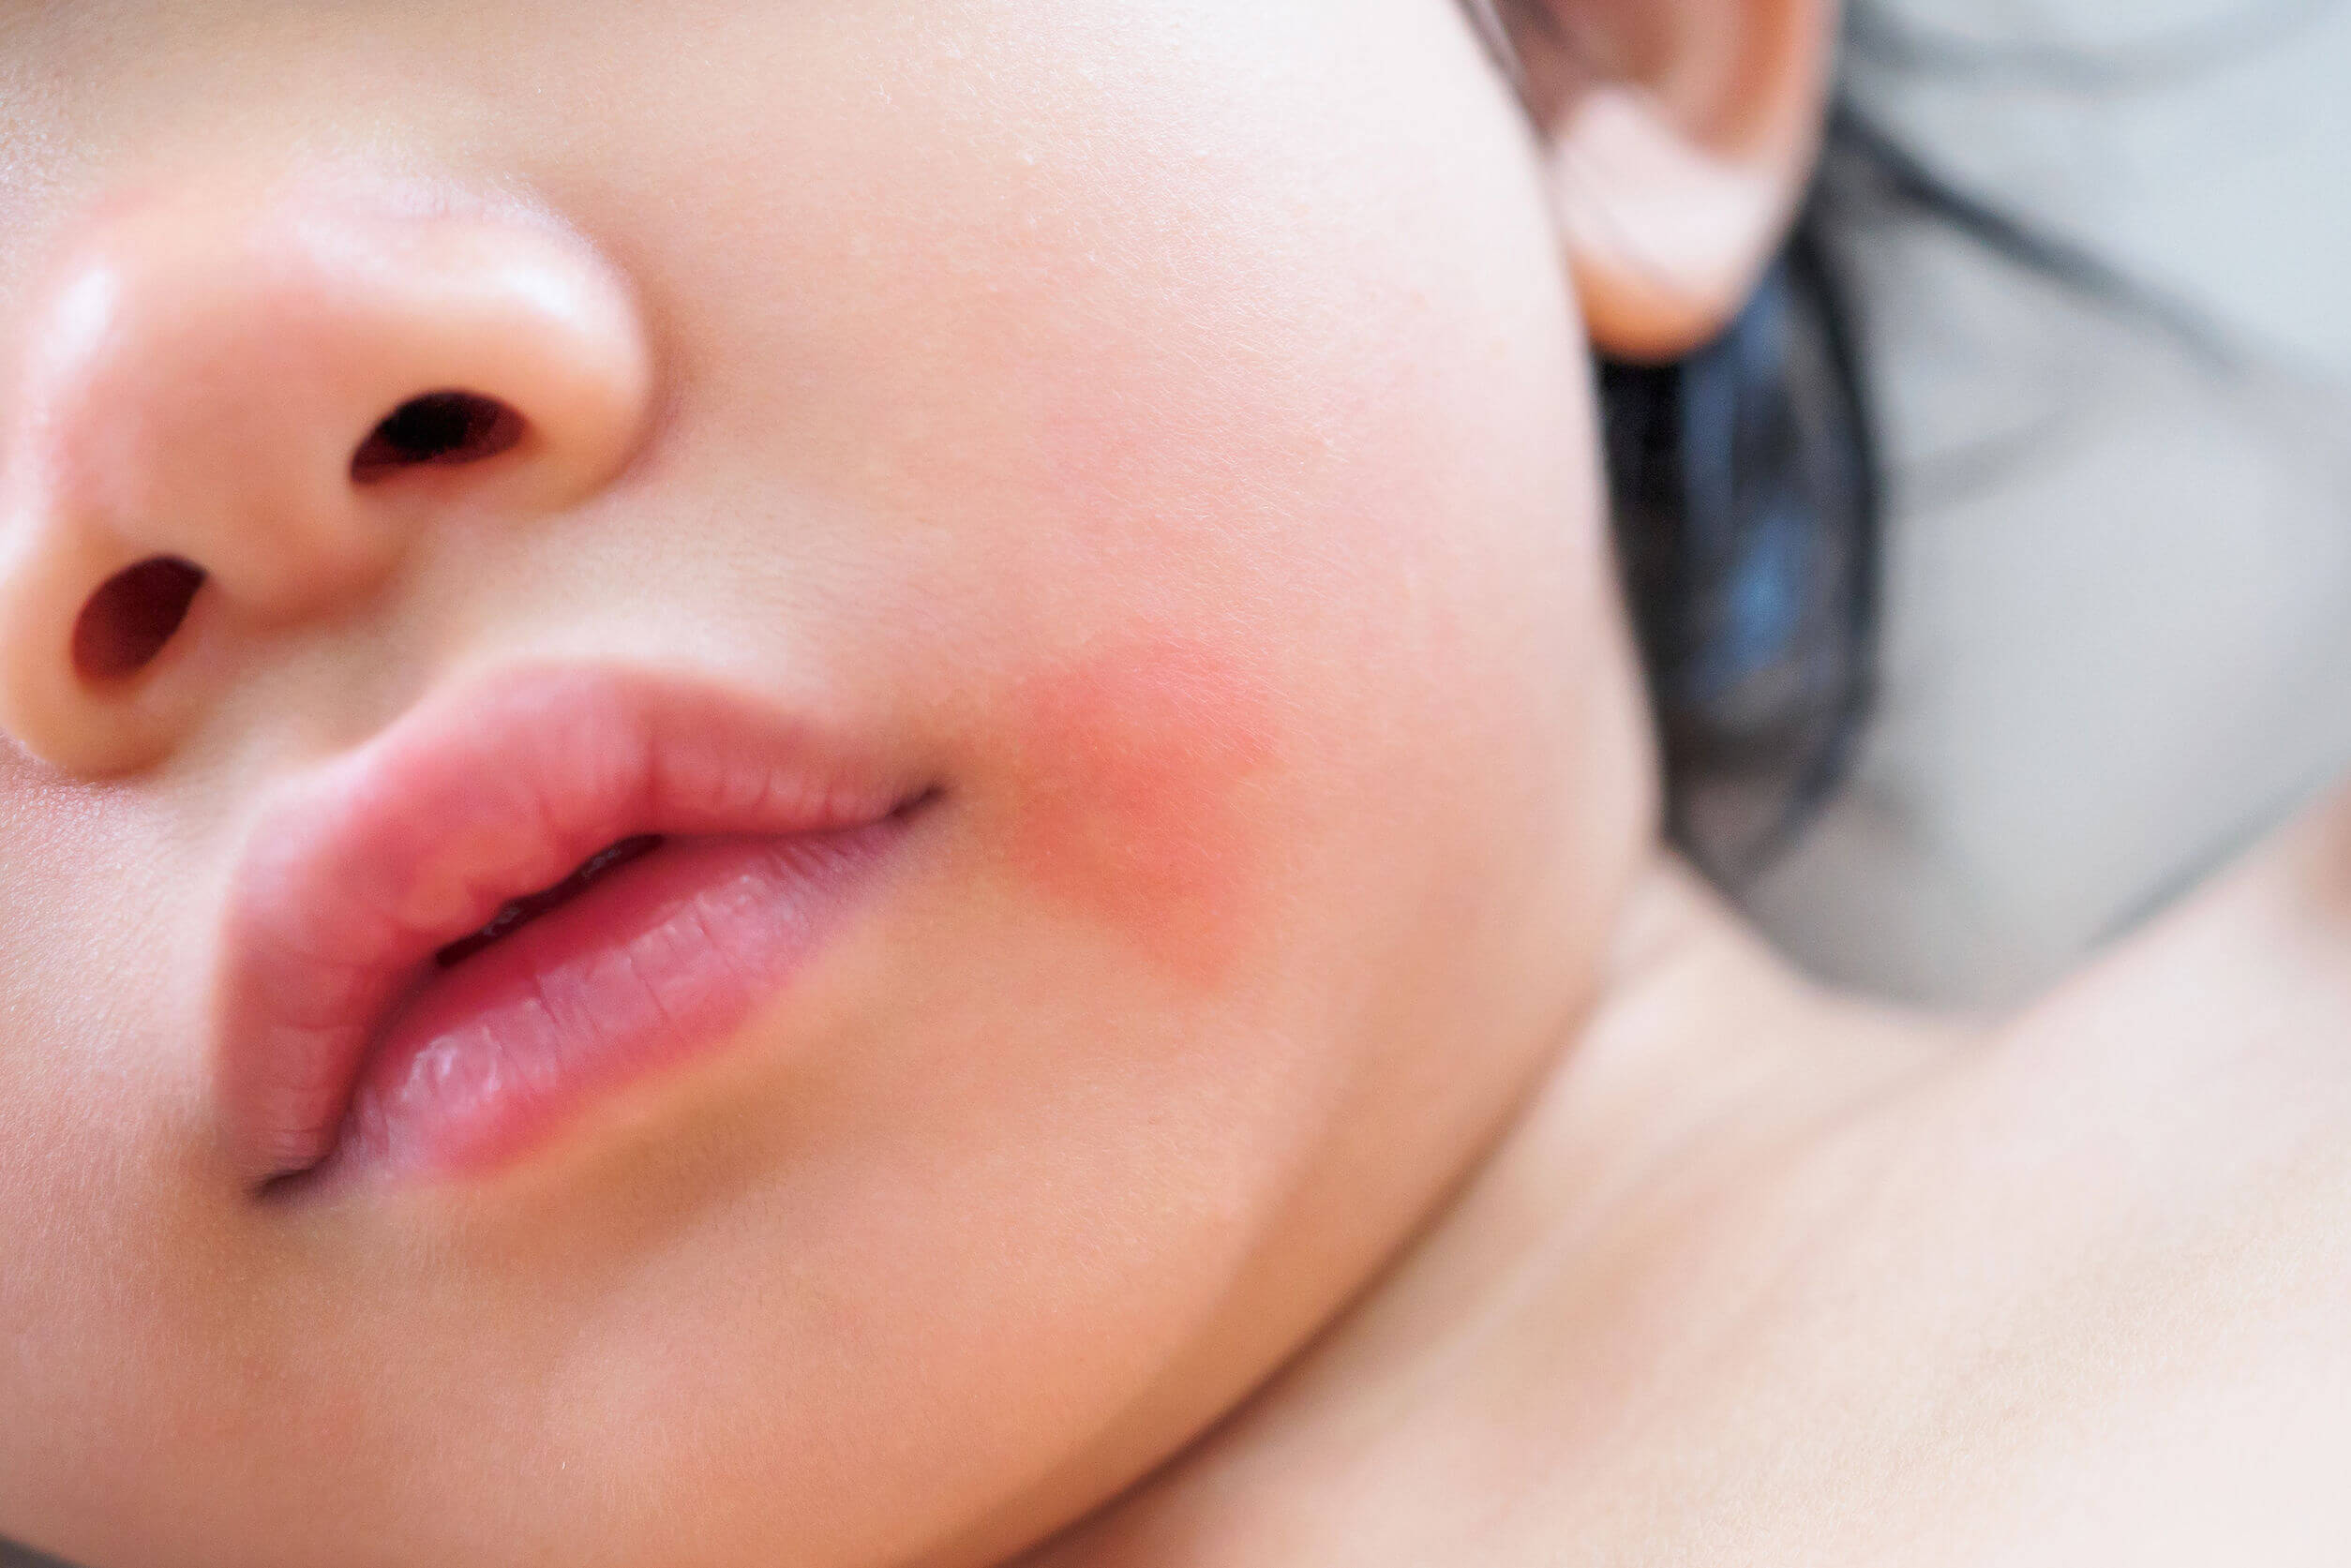 Manchas vermelhas na pele incluem alergias.